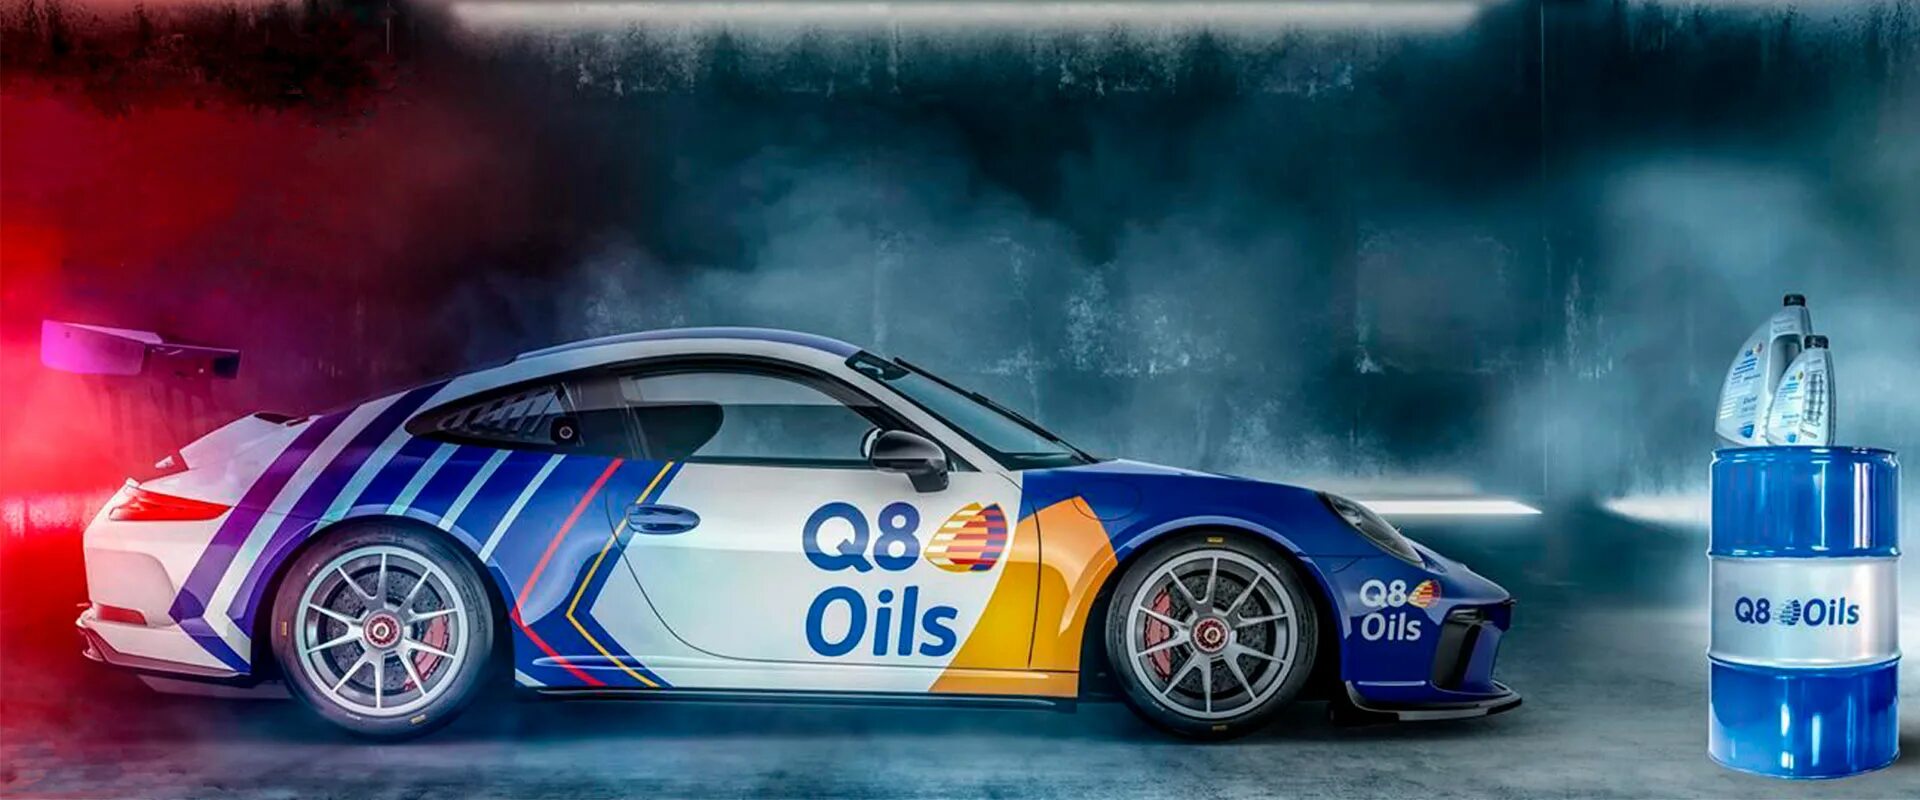 Q8 масло. Q8oils реклама. Масло q8 логотип. Q8 Oils логотип. Машинное масло 8